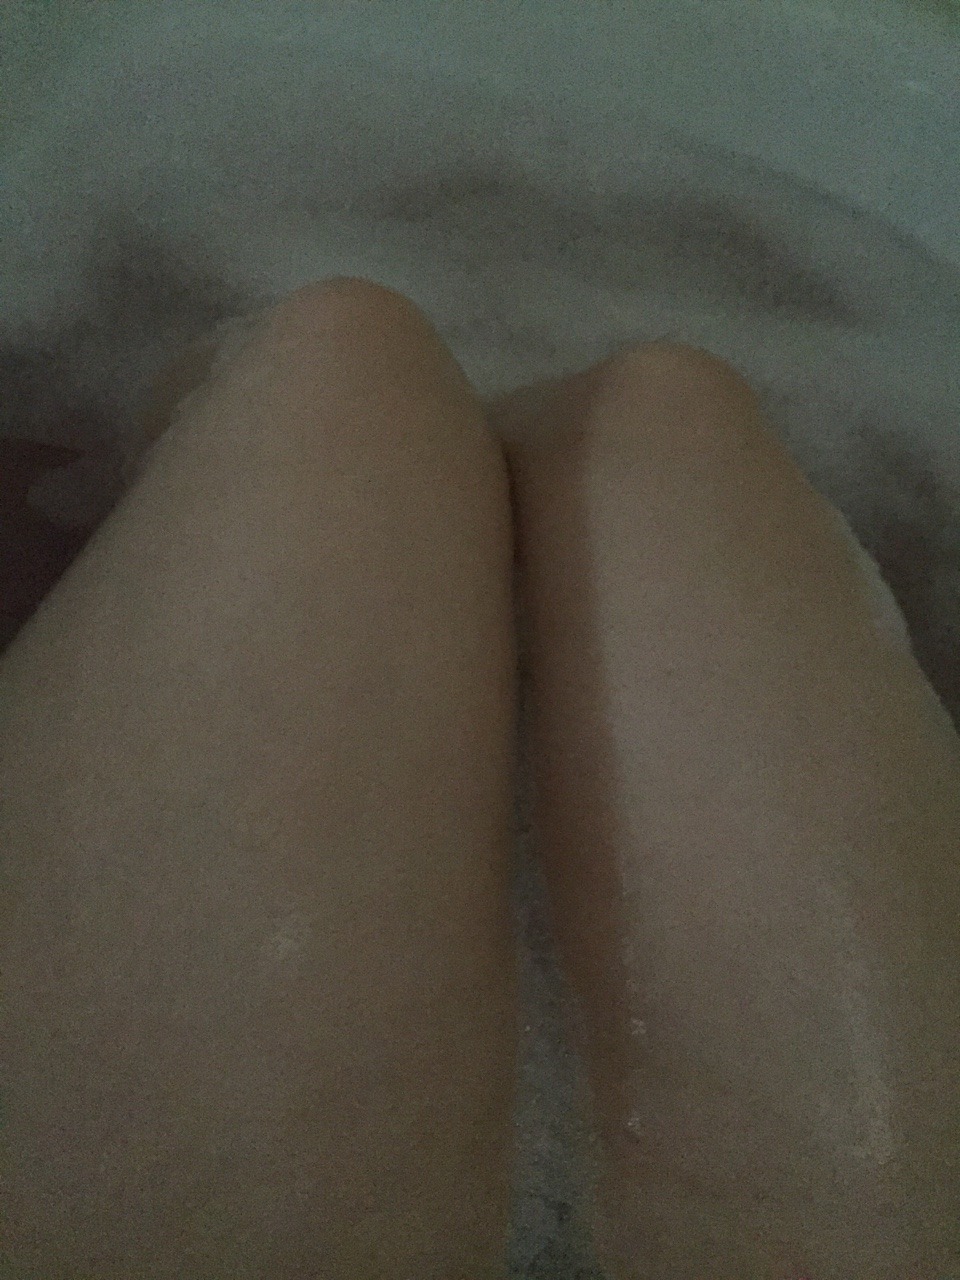 Bubble bath !